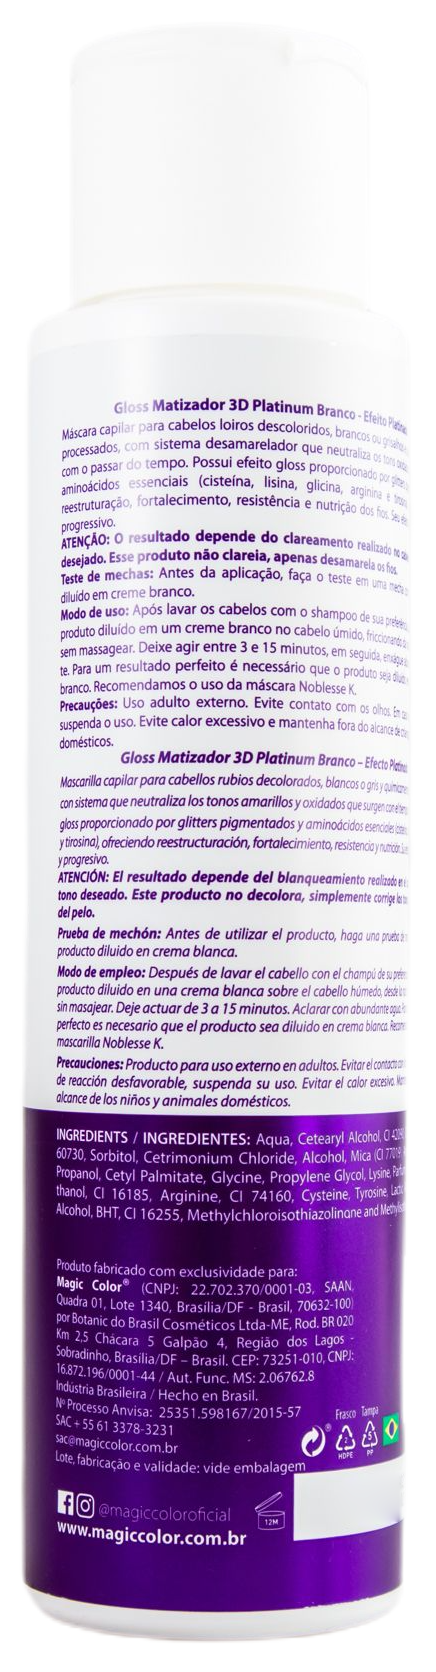 Magic Color Brazilian Keratin Treatment Platinum White Anti Yellow Treatment 3D Tinting Gloss Mask 500ml - Magic Color